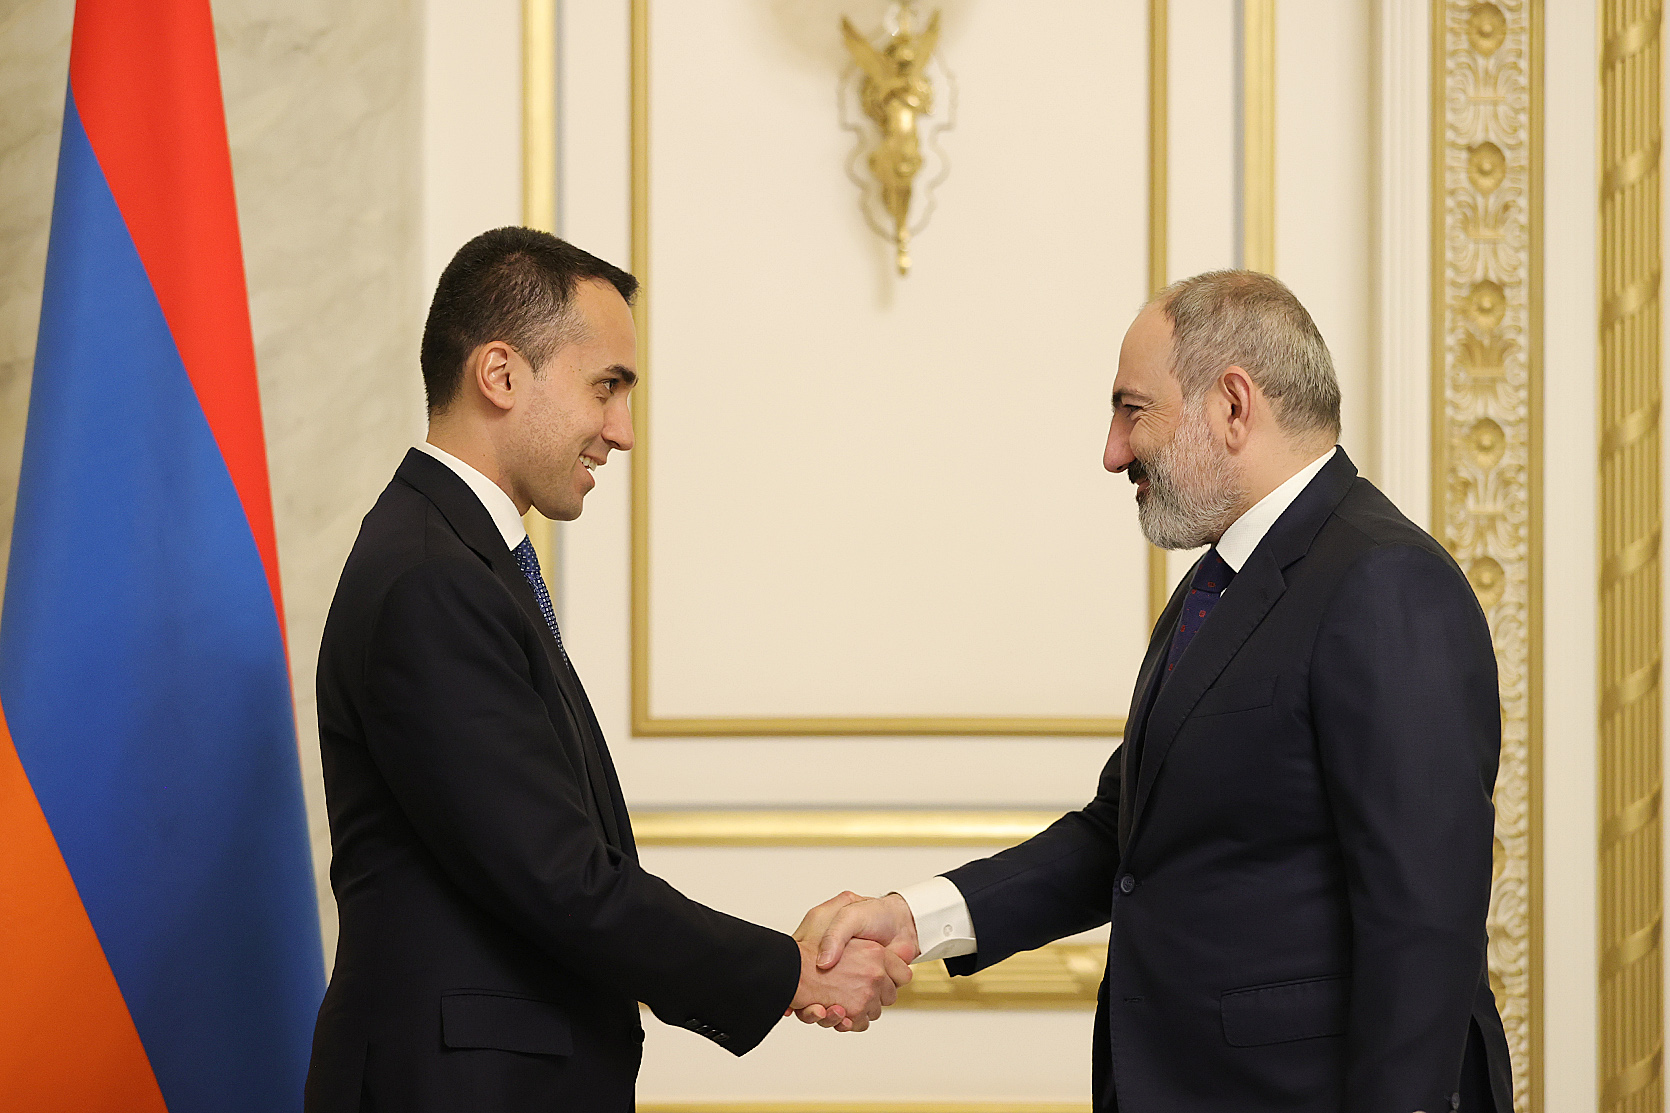 Италия заинтересована в расширении и укреплении сотрудничества с Арменией - глава МИД